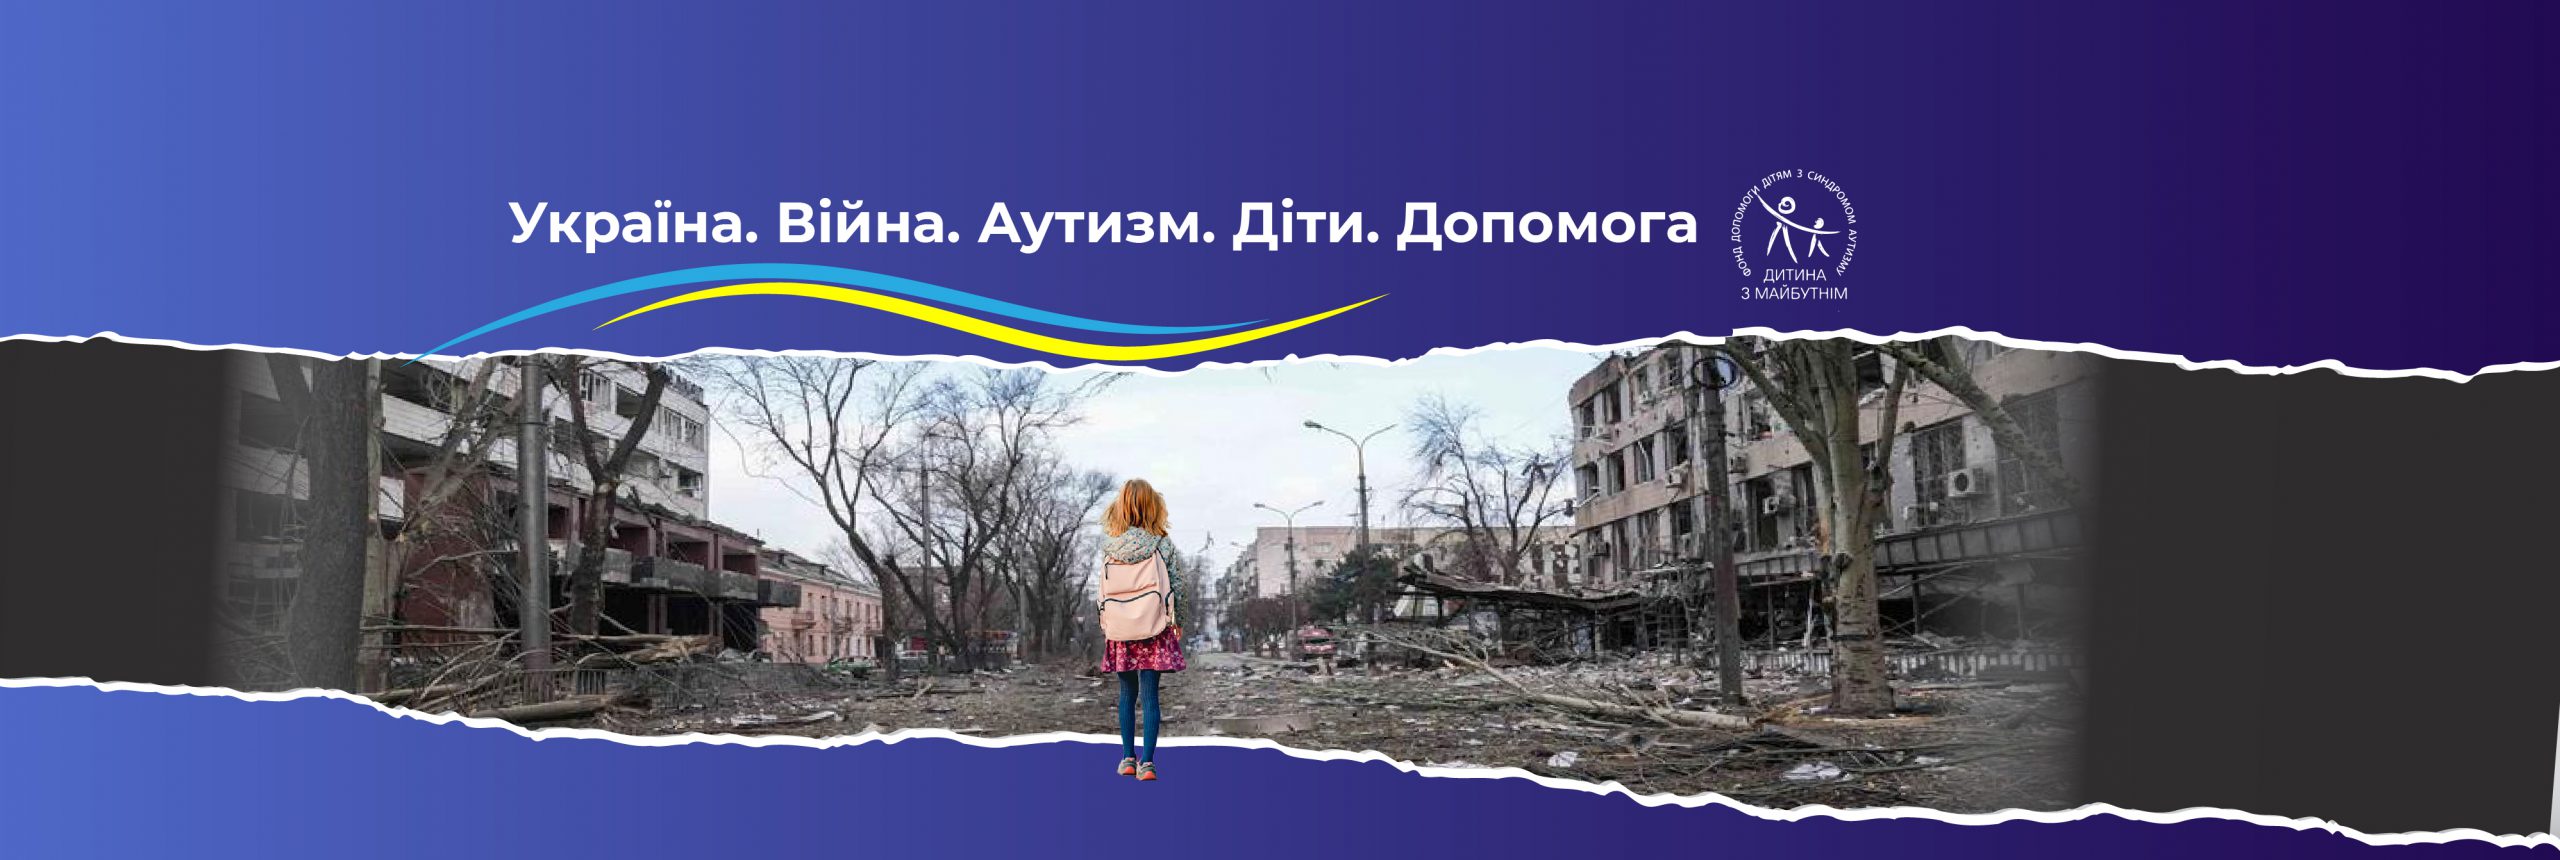 Оголошуємо збір коштів по всьому світу для допомоги дітям з України